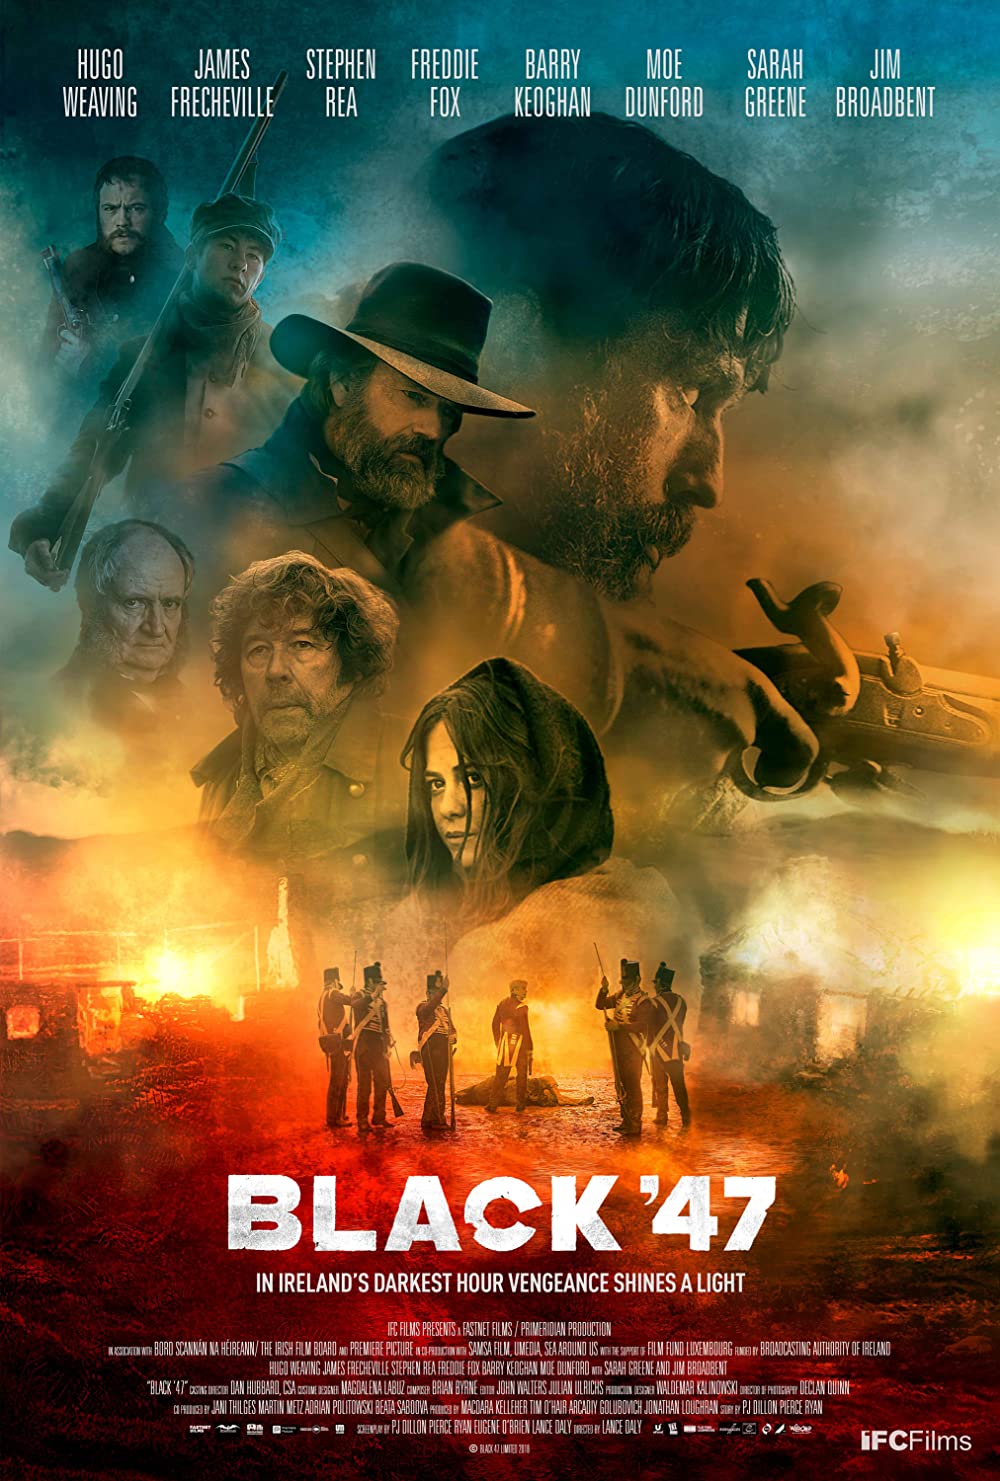 Filmbeschreibung zu Black 47